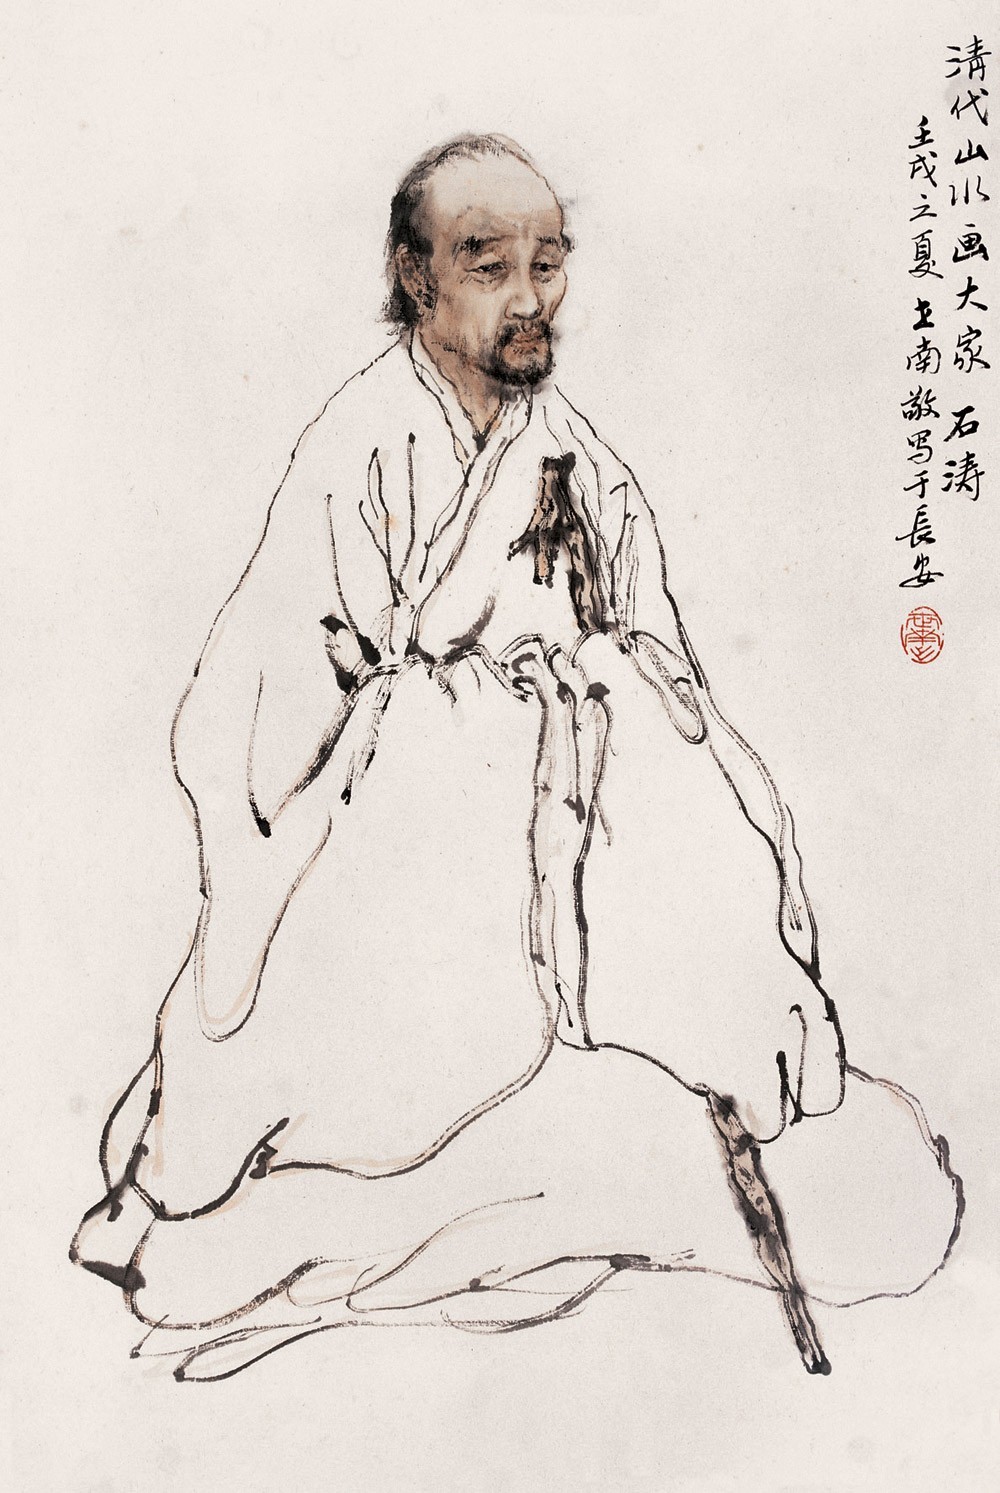 中国绘画史上伟大人物之一石涛ShiTao_全球书画名家_道子羲之